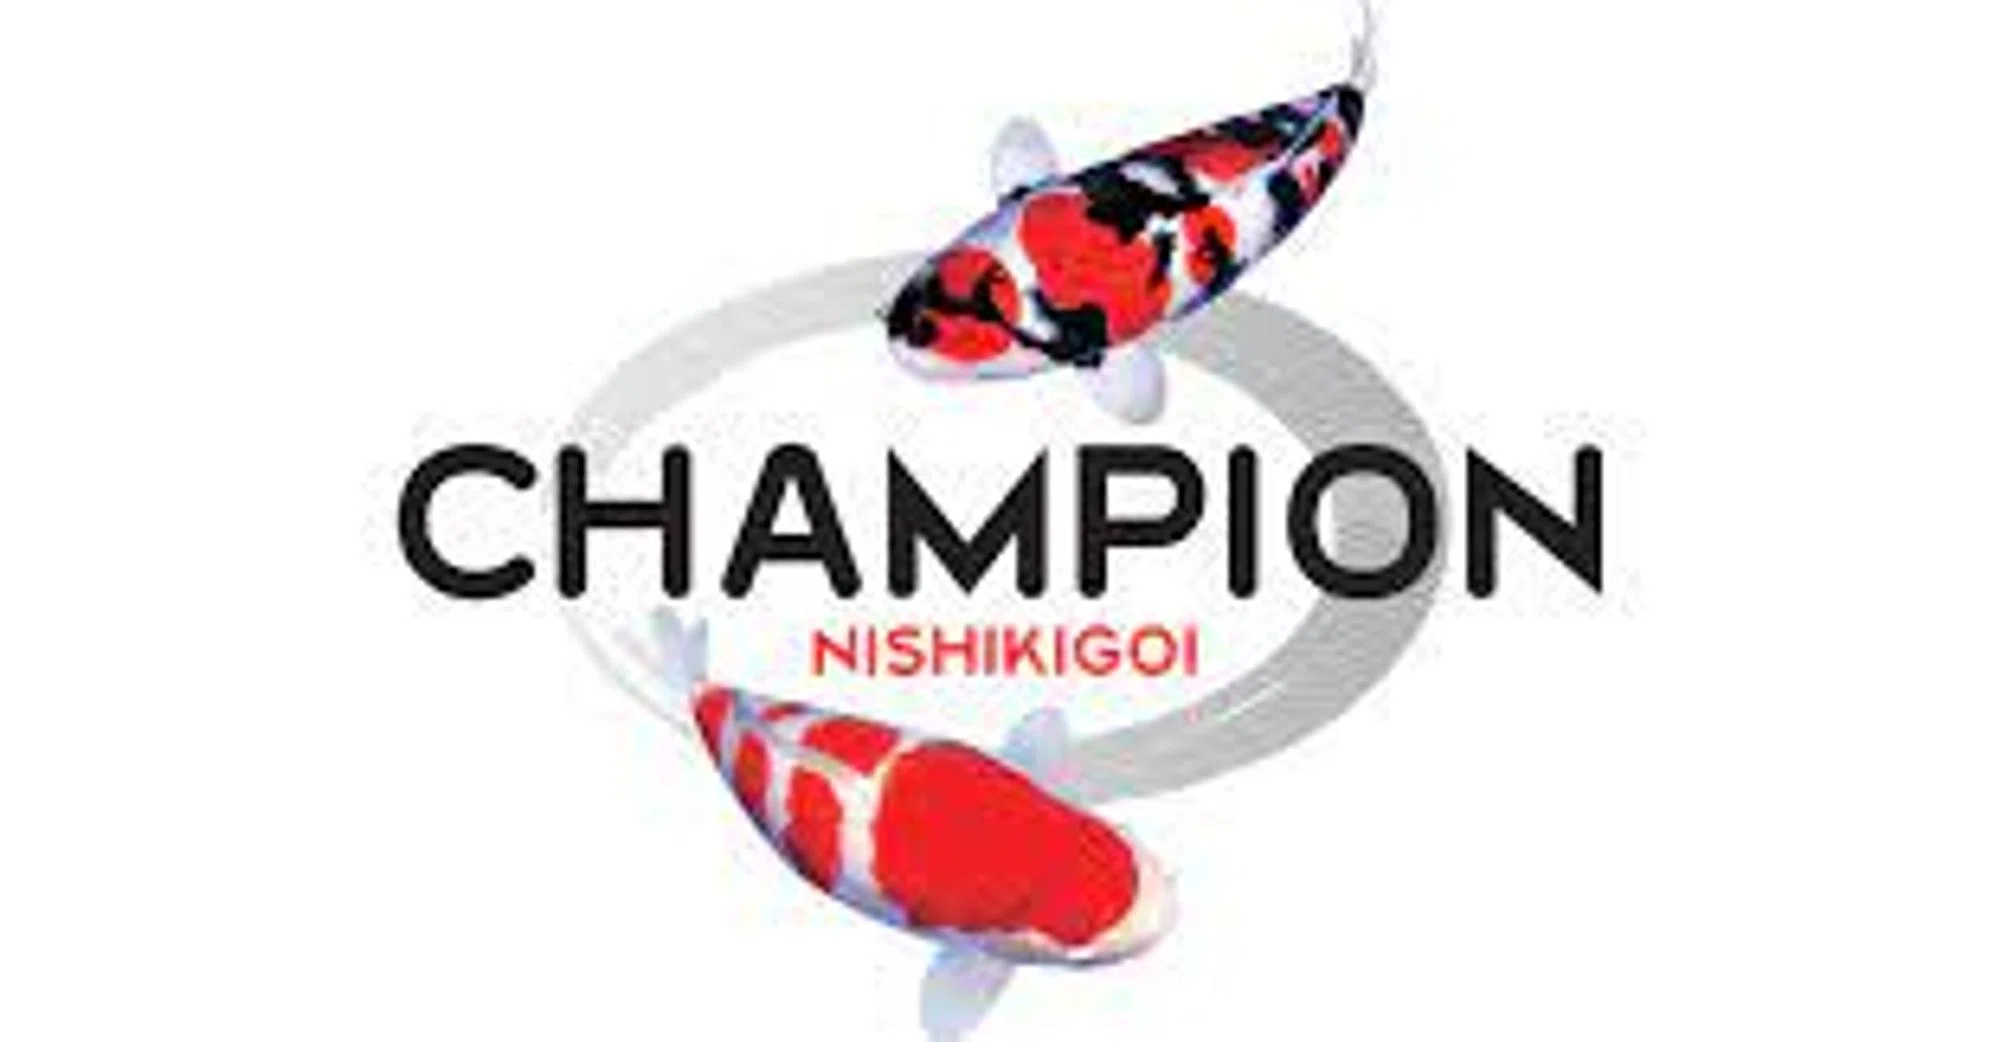 Champion Nishikigoi